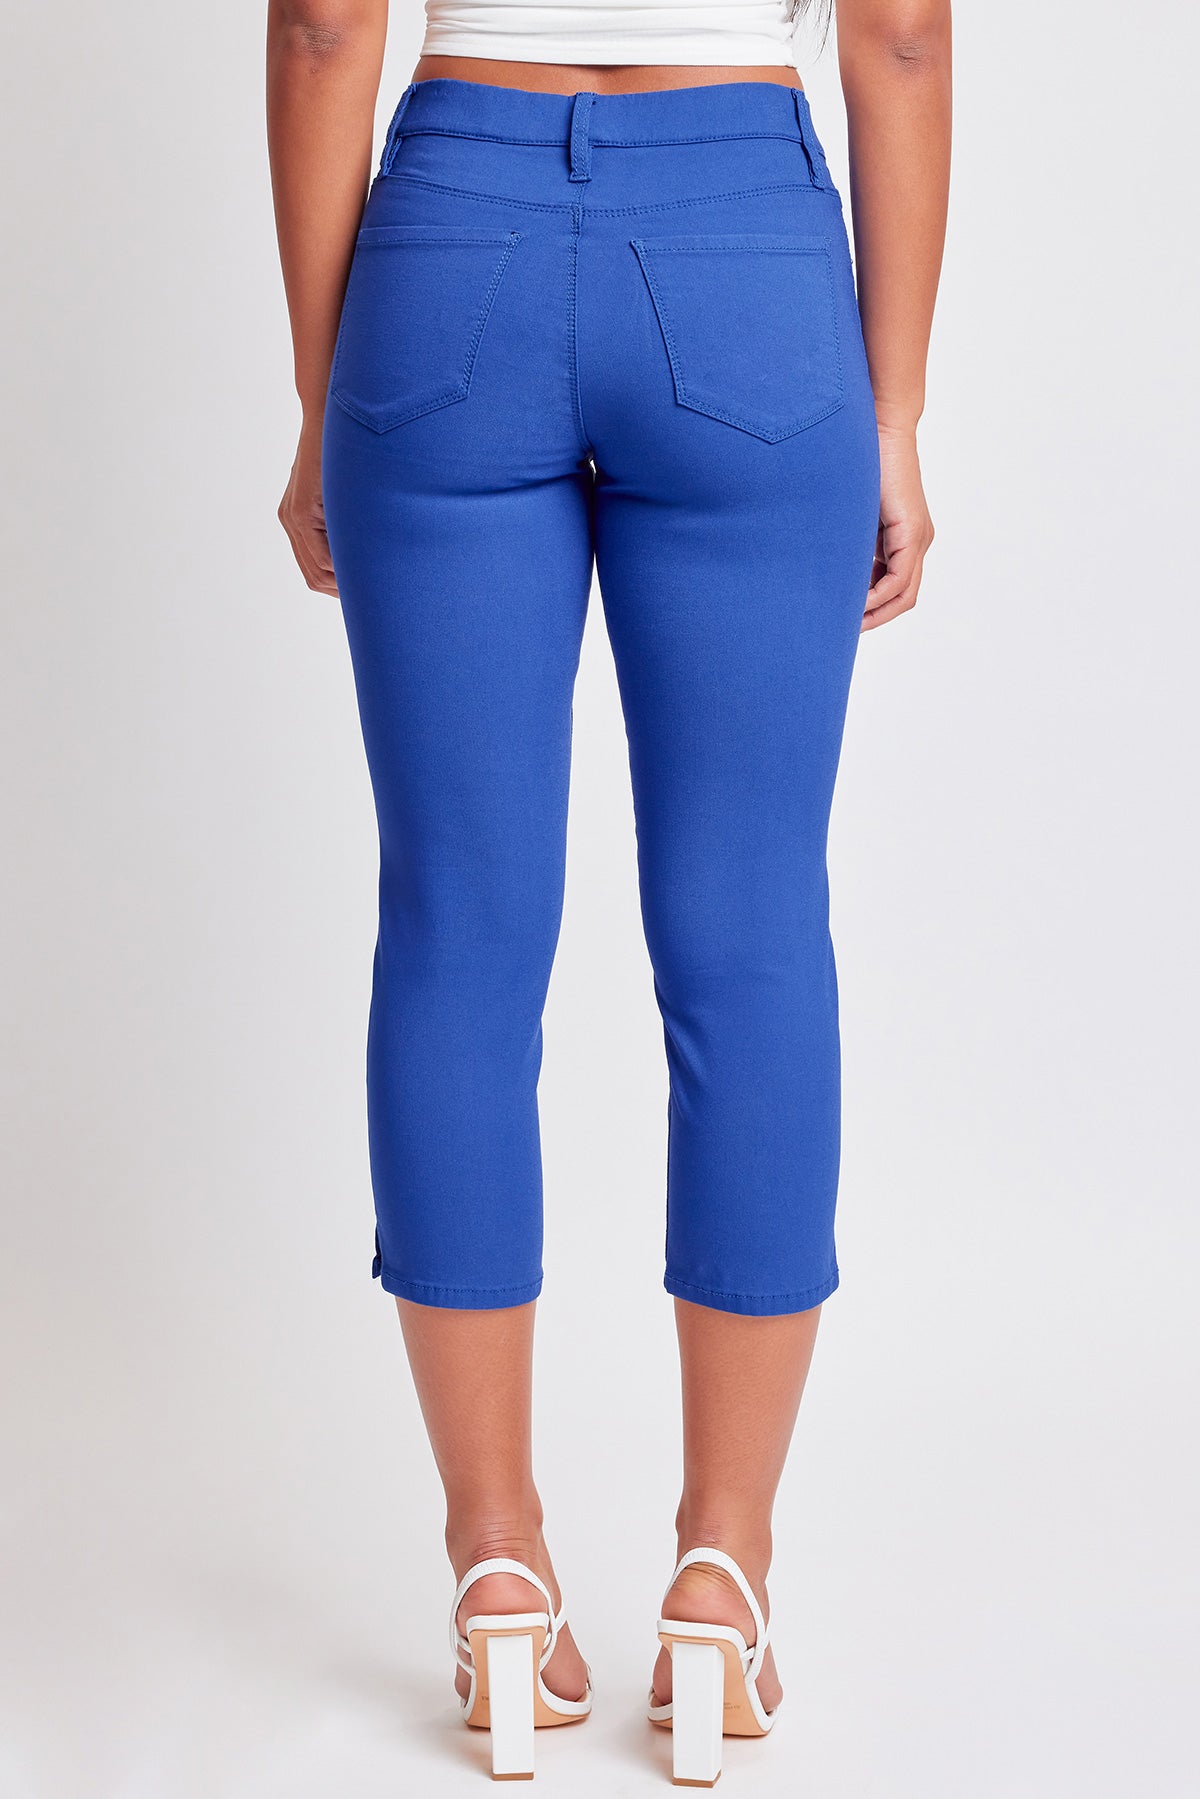 YMI Women's Size 0 w23 Dark Blue Denim Thick Stitch Capri Jeans